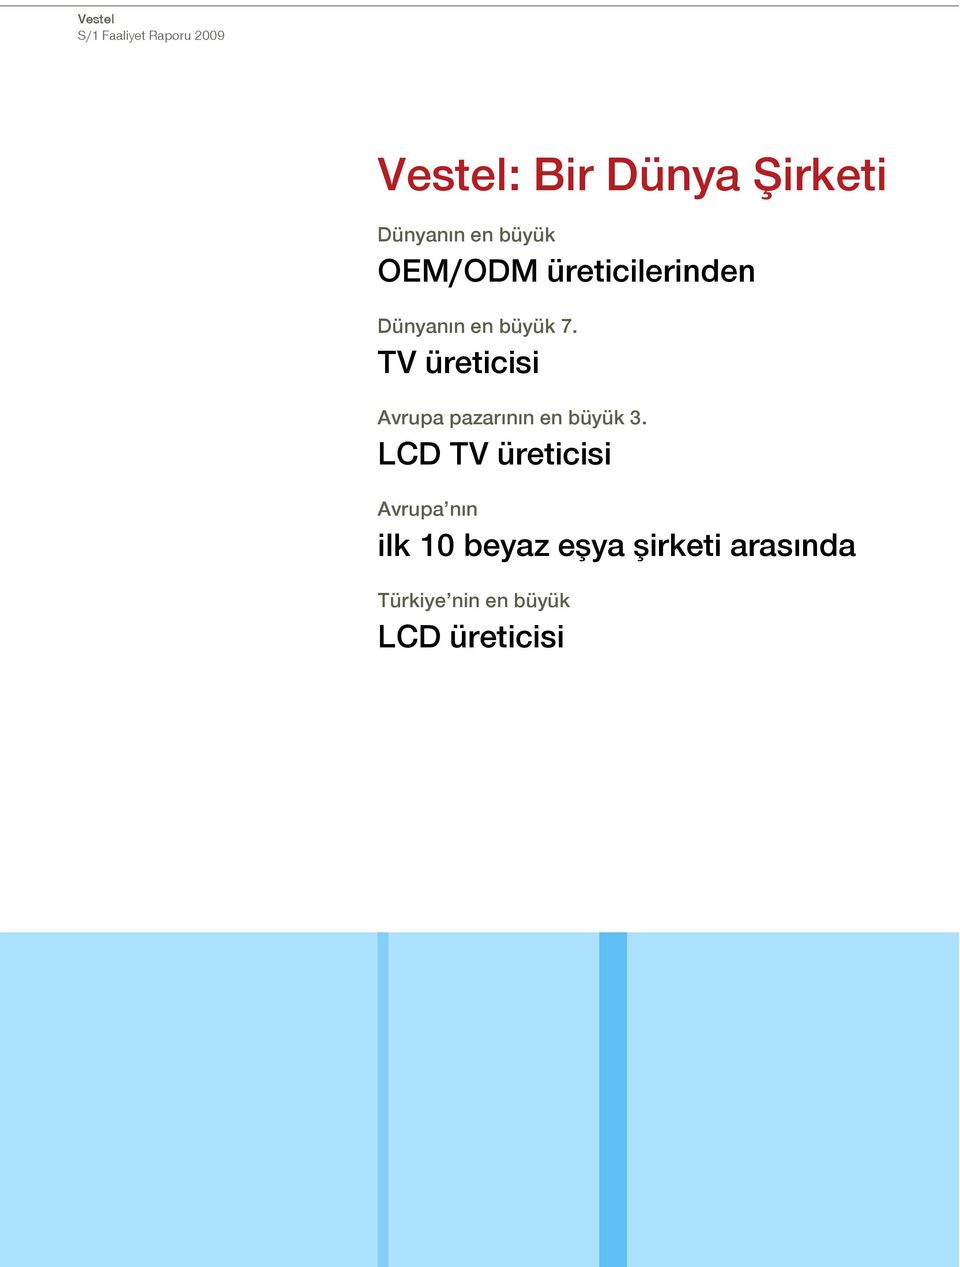 TV üreticisi Avrupa pazarının en büyük 3.